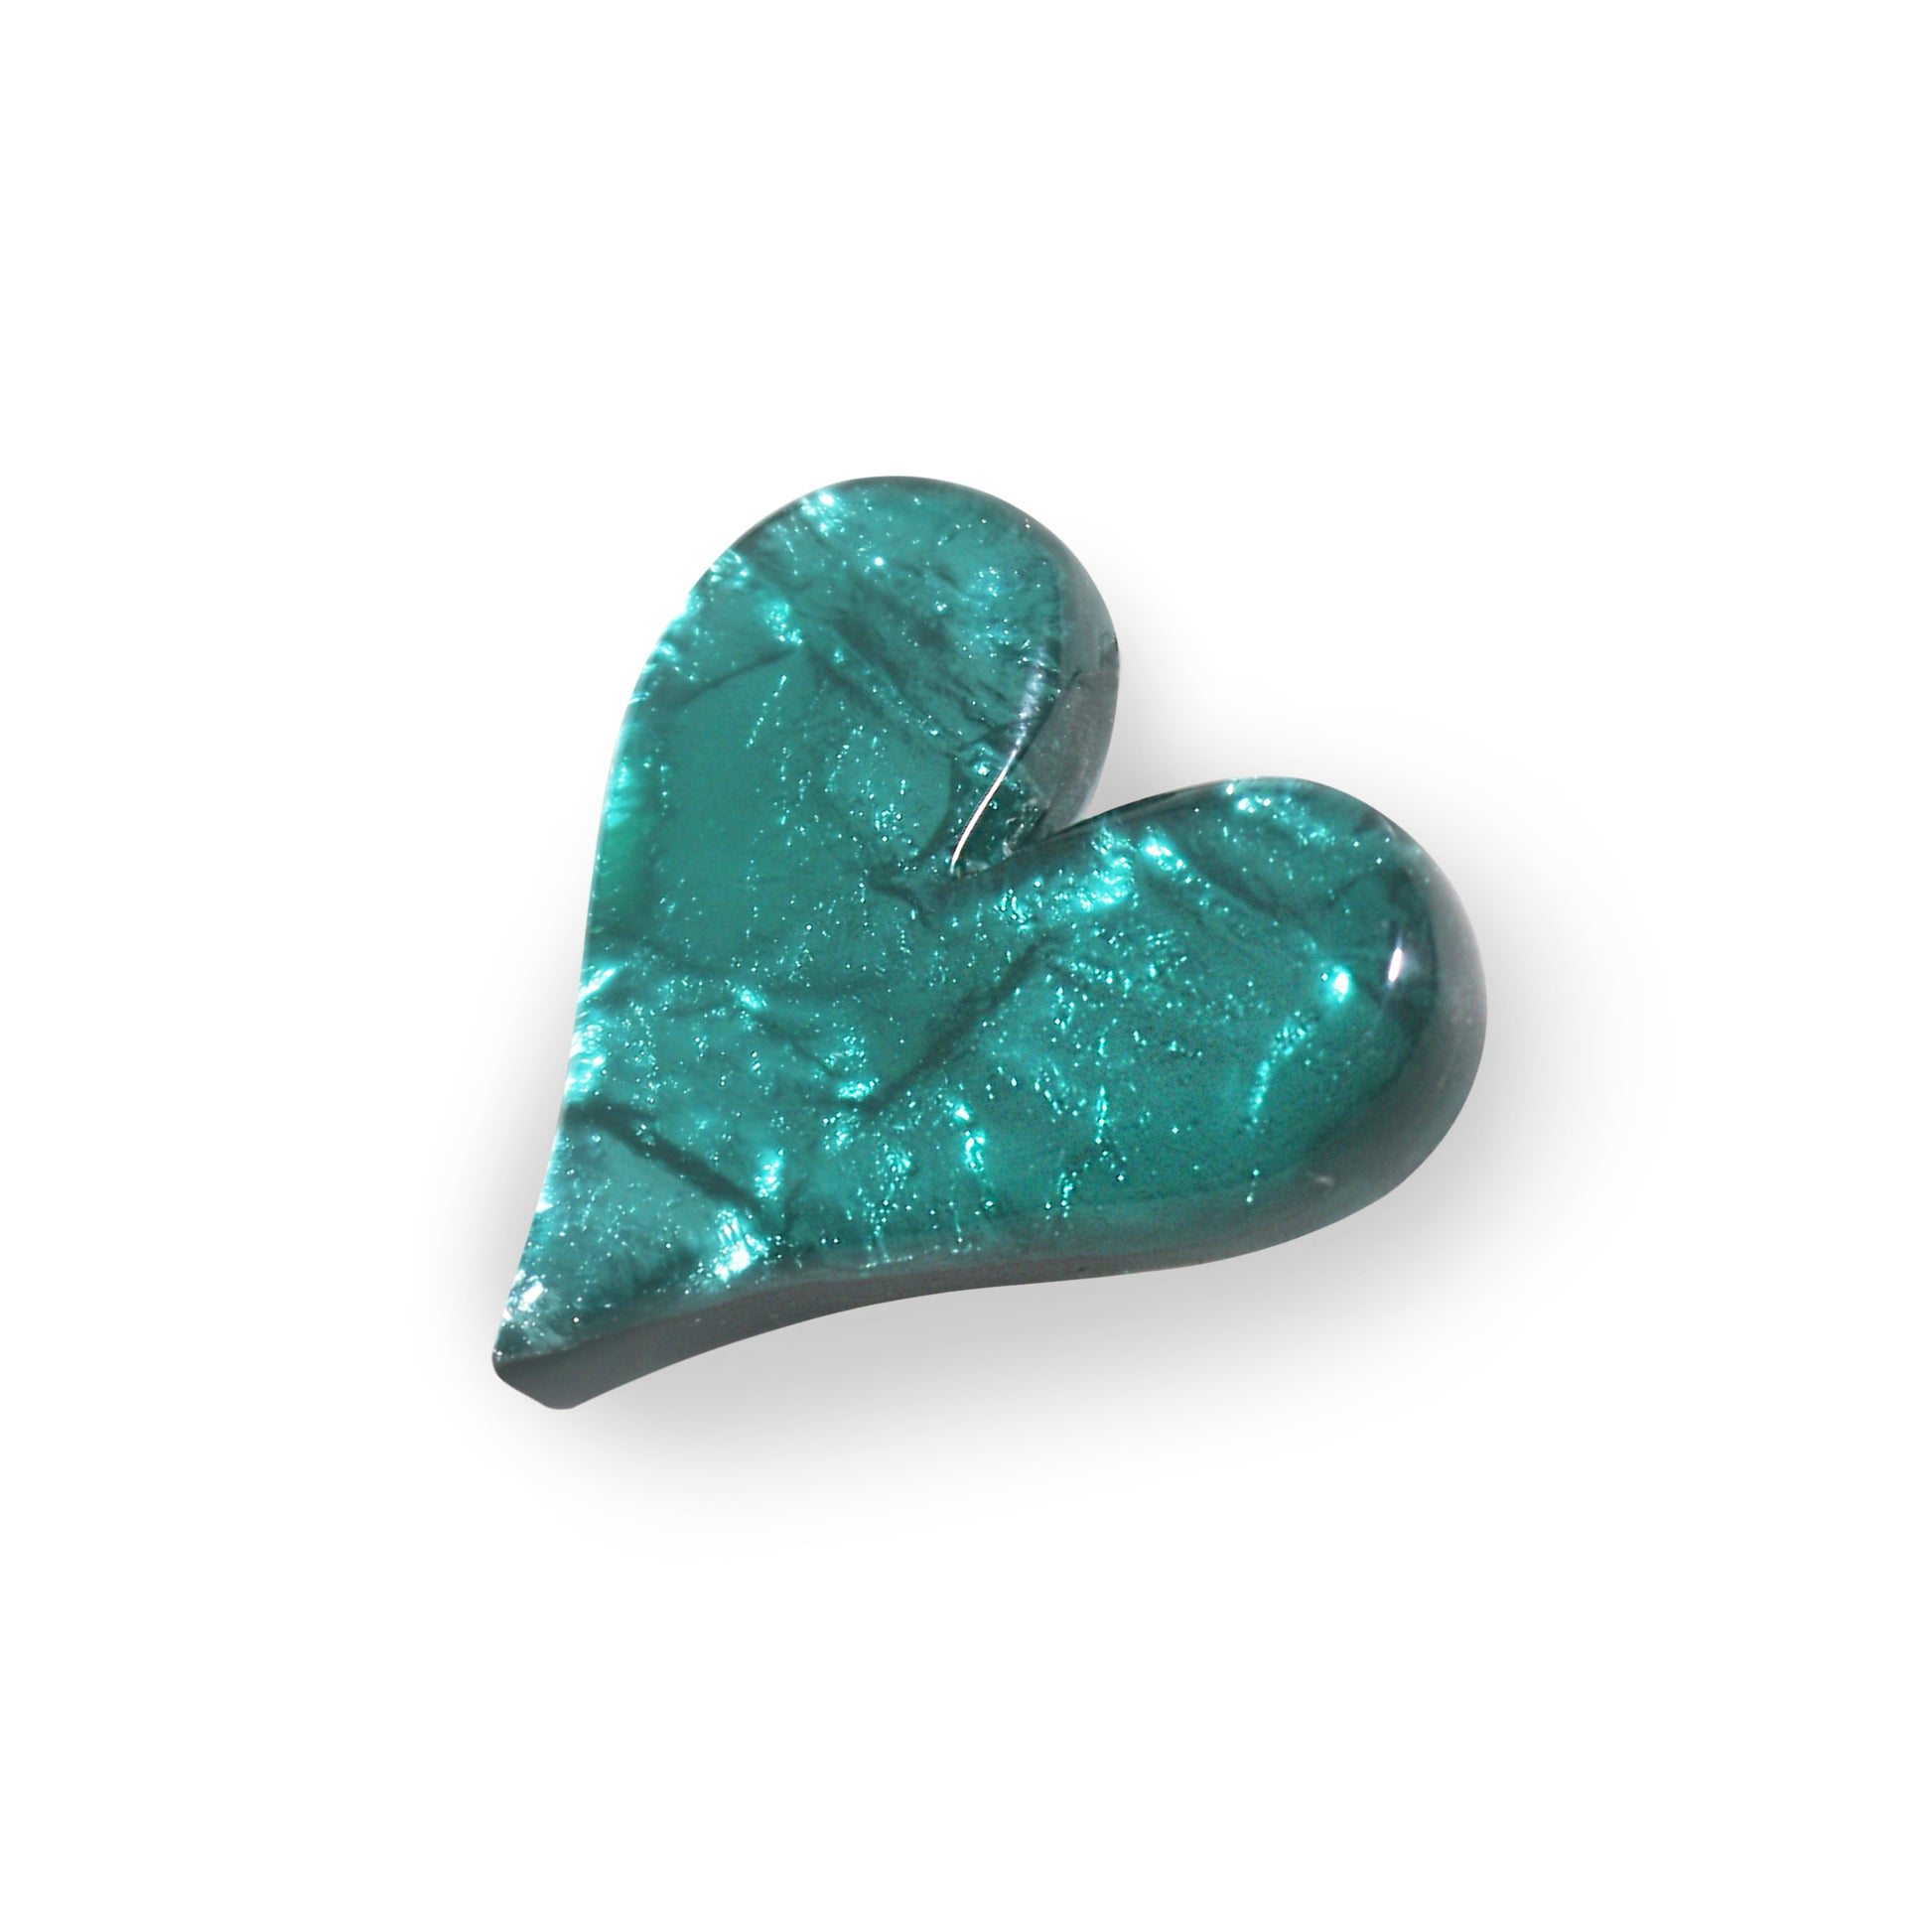 Aqua Aztec Heart Shiny Brooch